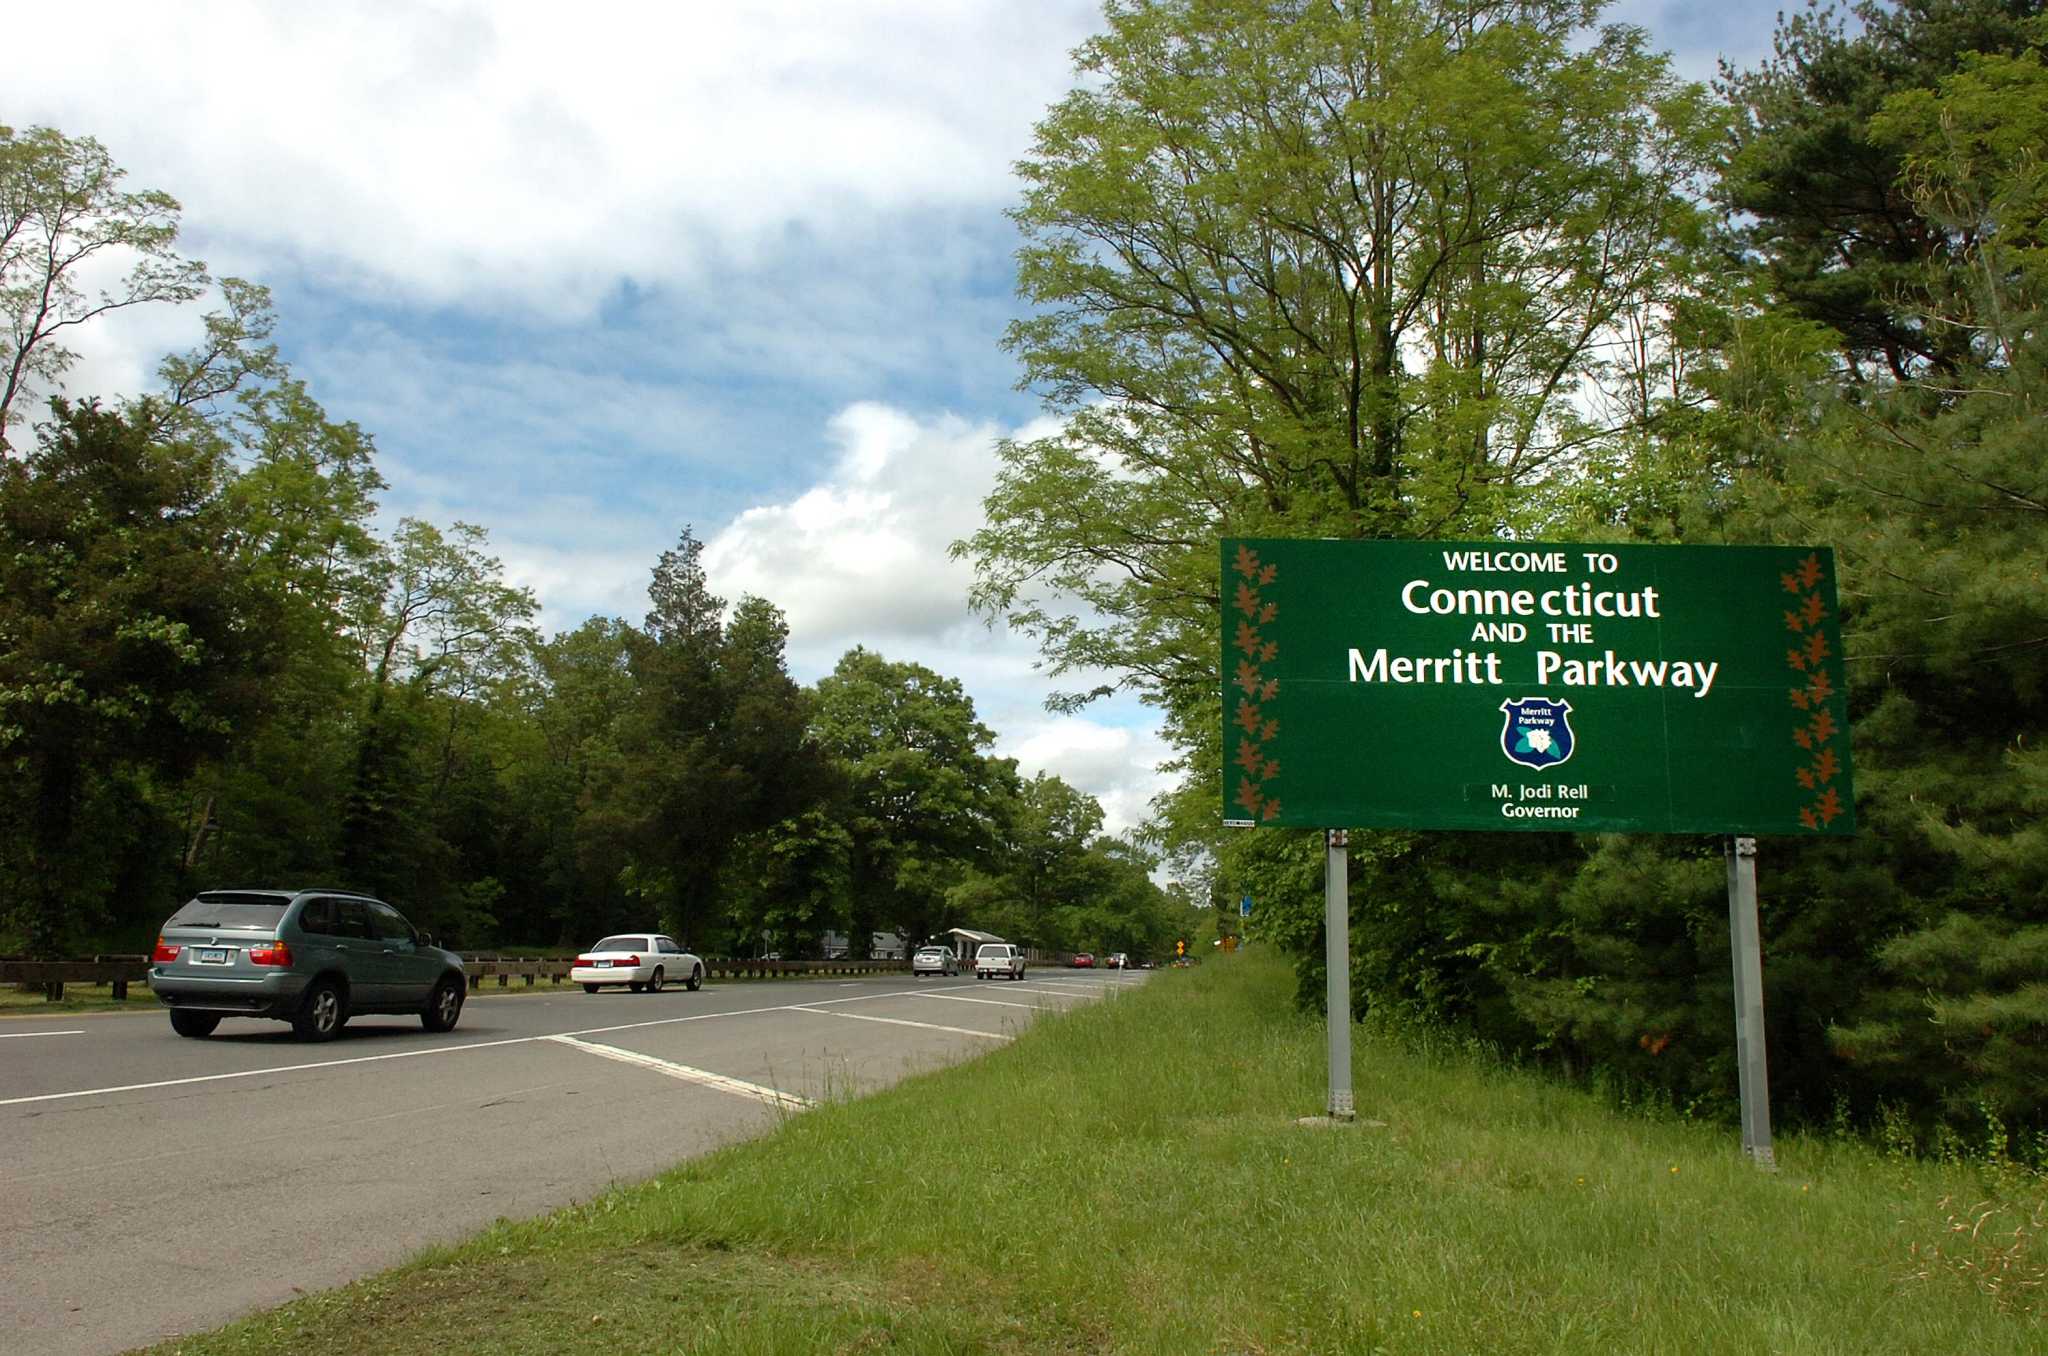 Merritt Parkway